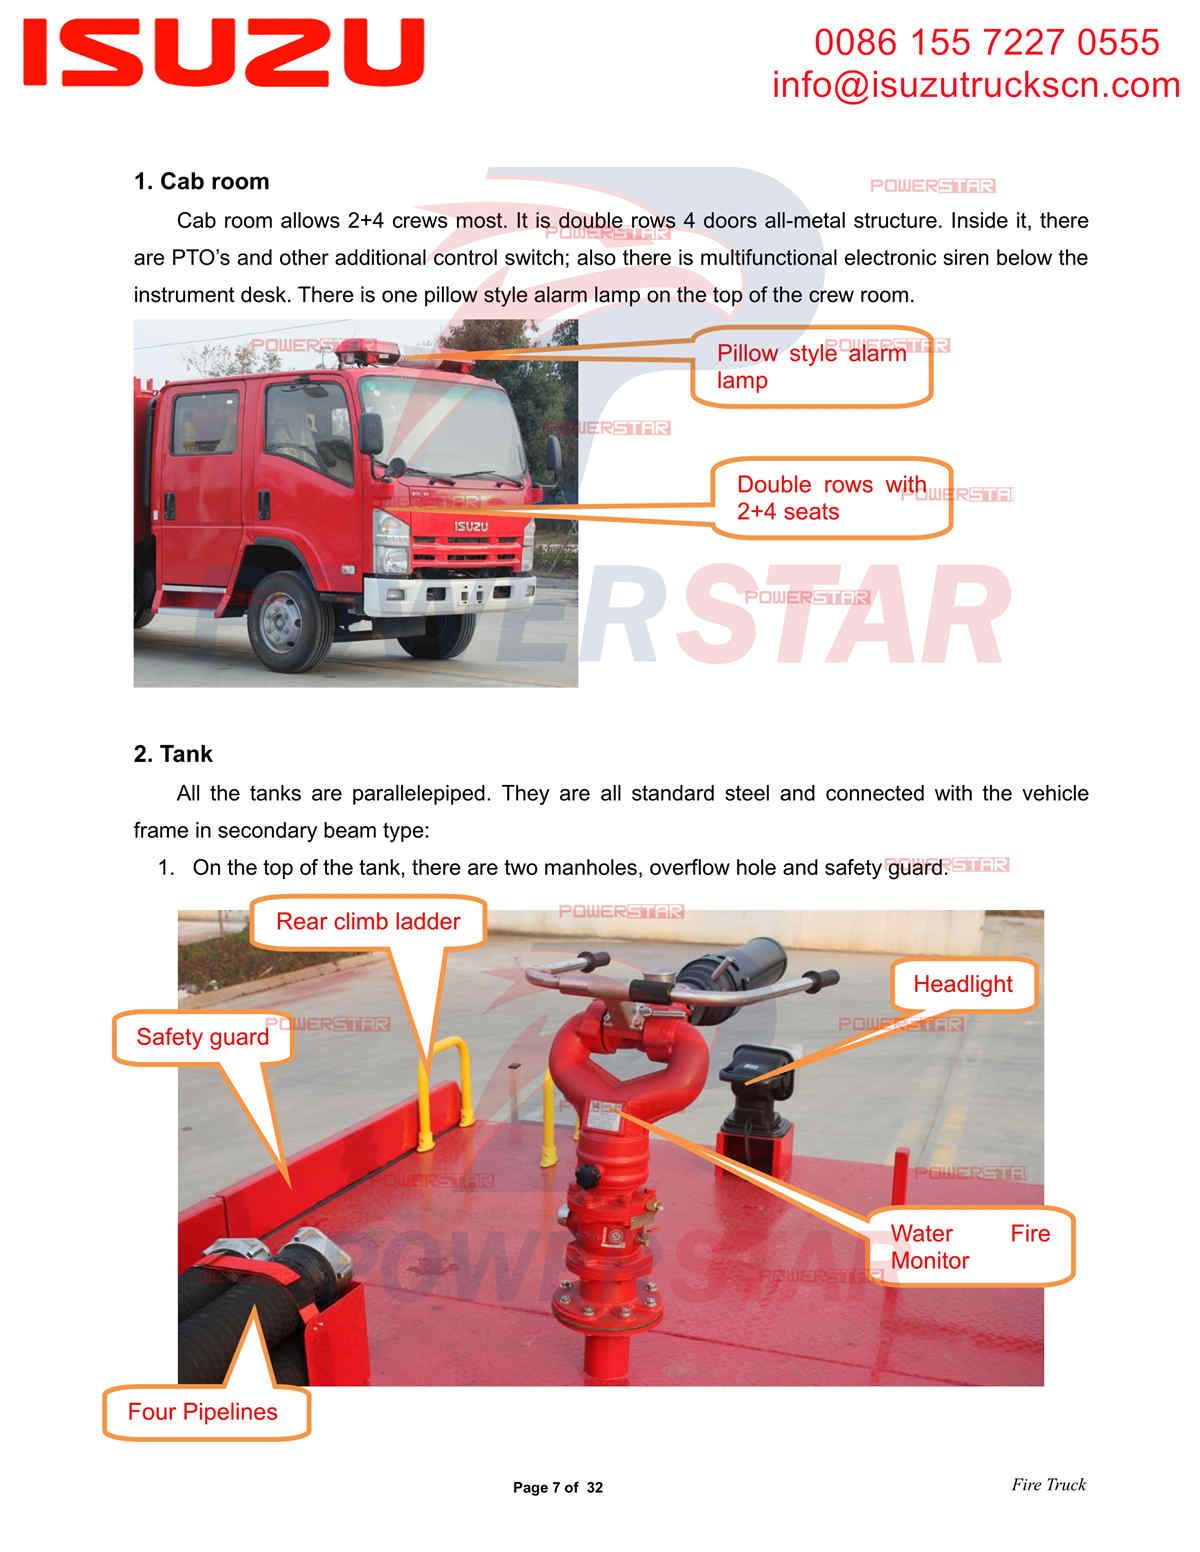 دليل POWERSTAR ISUZU Fire Truck تصدير سيراليون